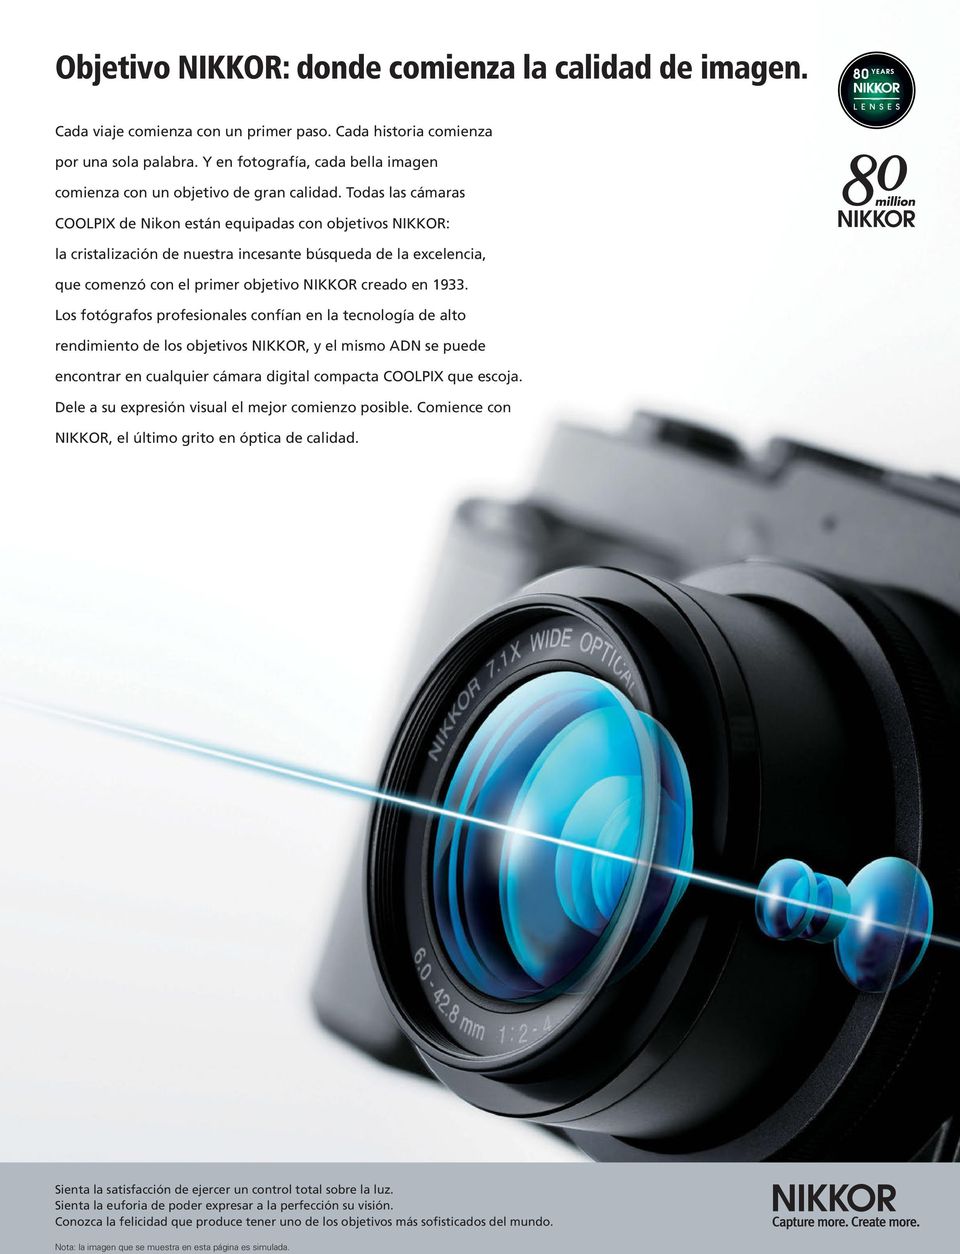 Todas las cámaras COOLPIX de Nikon están equipadas con objetivos NIKKOR: la cristalización de nuestra incesante búsqueda de la excelencia, que comenzó con el primer objetivo NIKKOR creado en 1933.